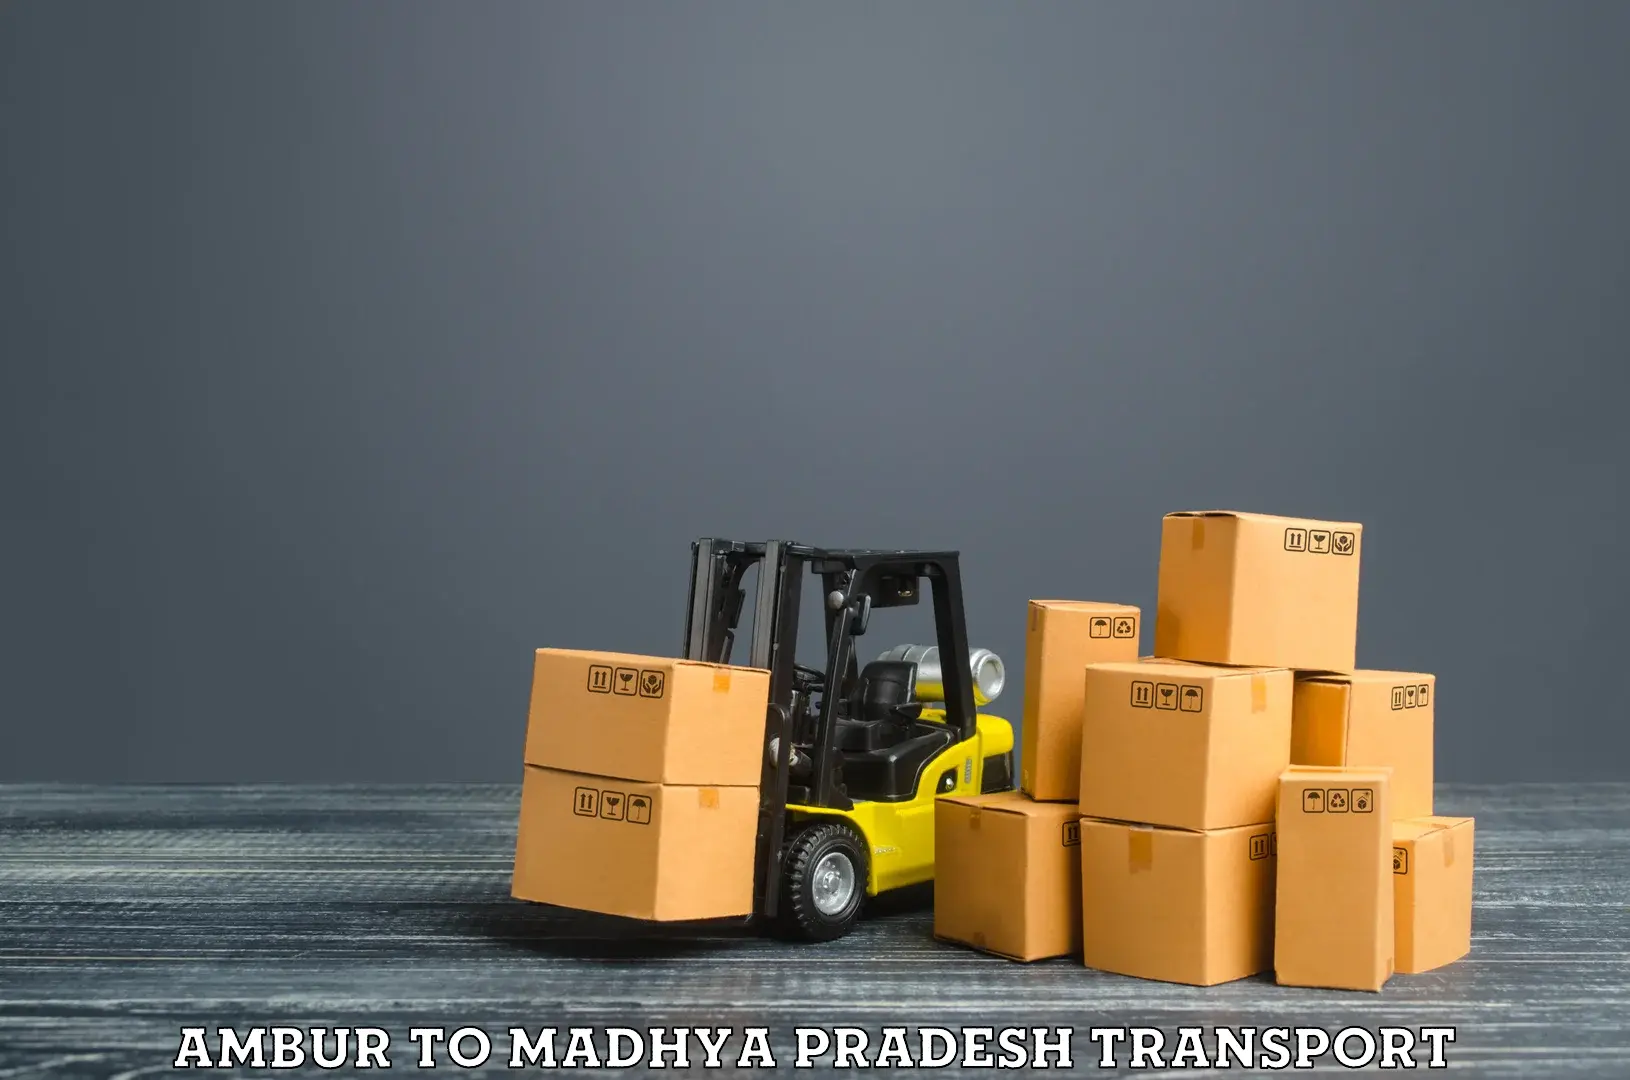 Furniture transport service Ambur to Bichhiya